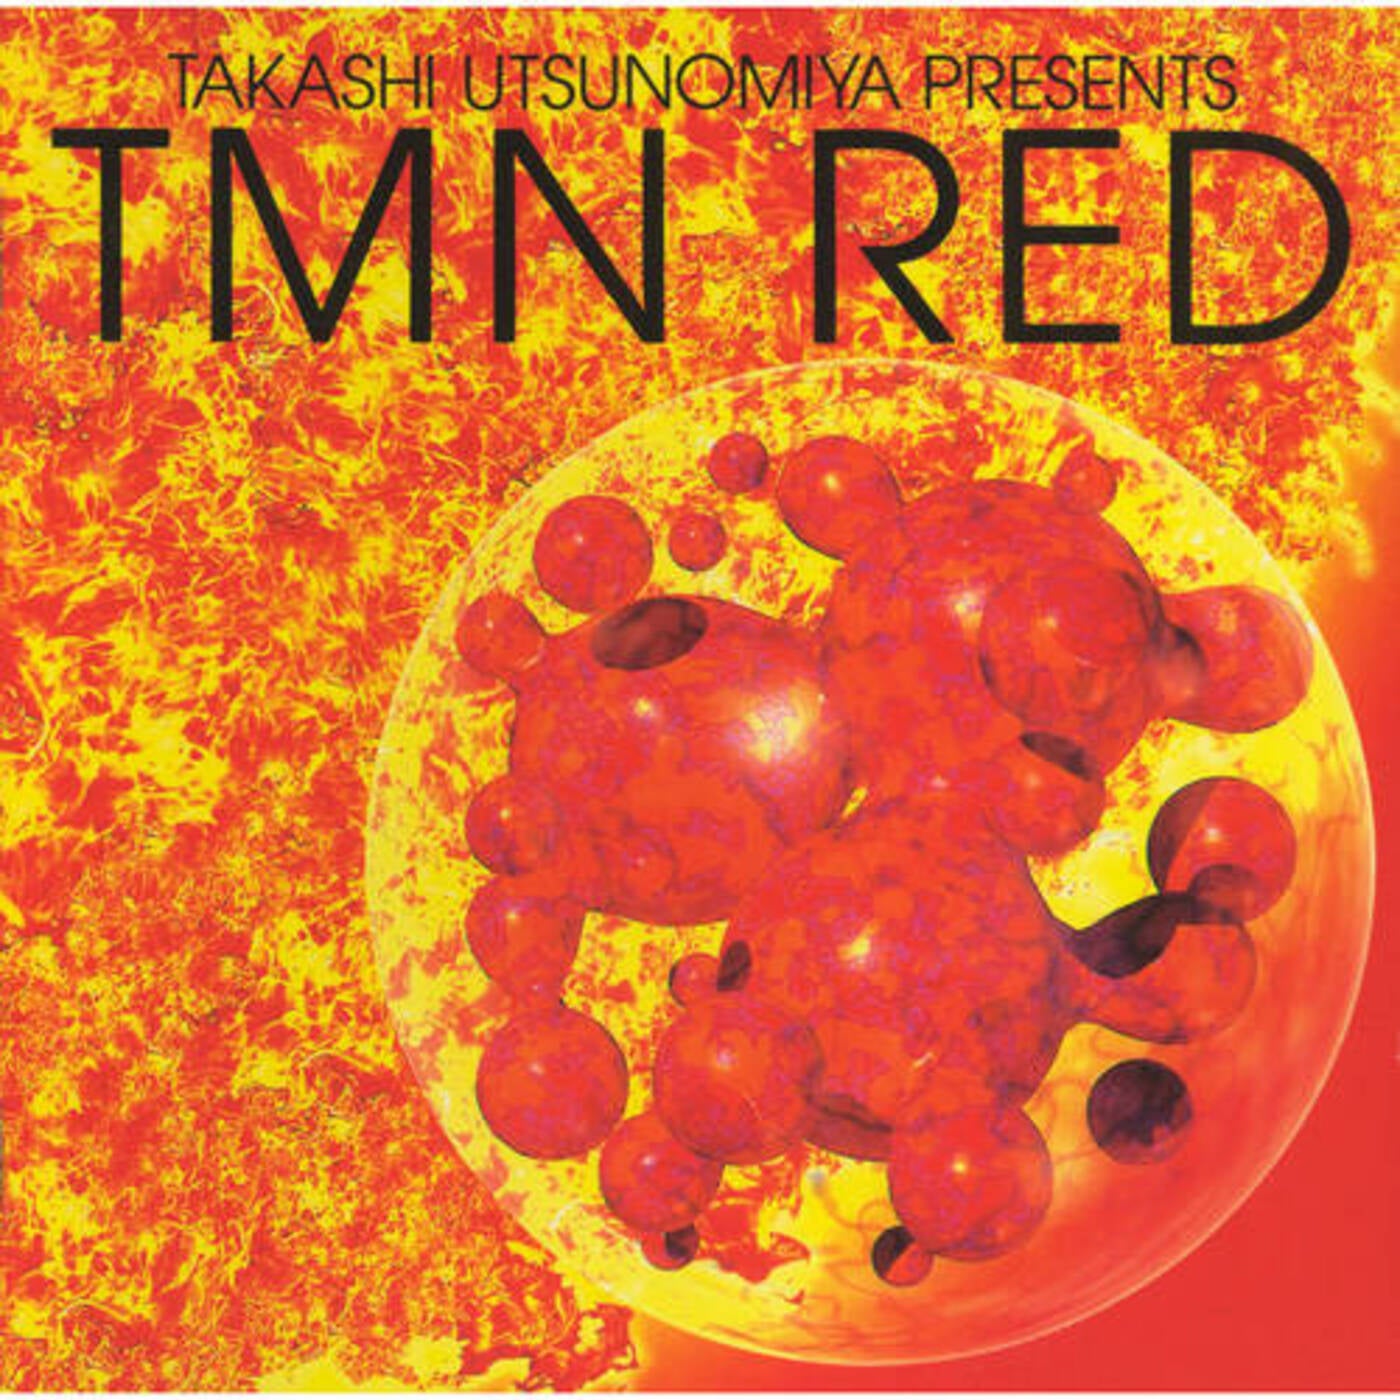 Takashi Utsunomiya Presents TMN red by TM Network and TMN on